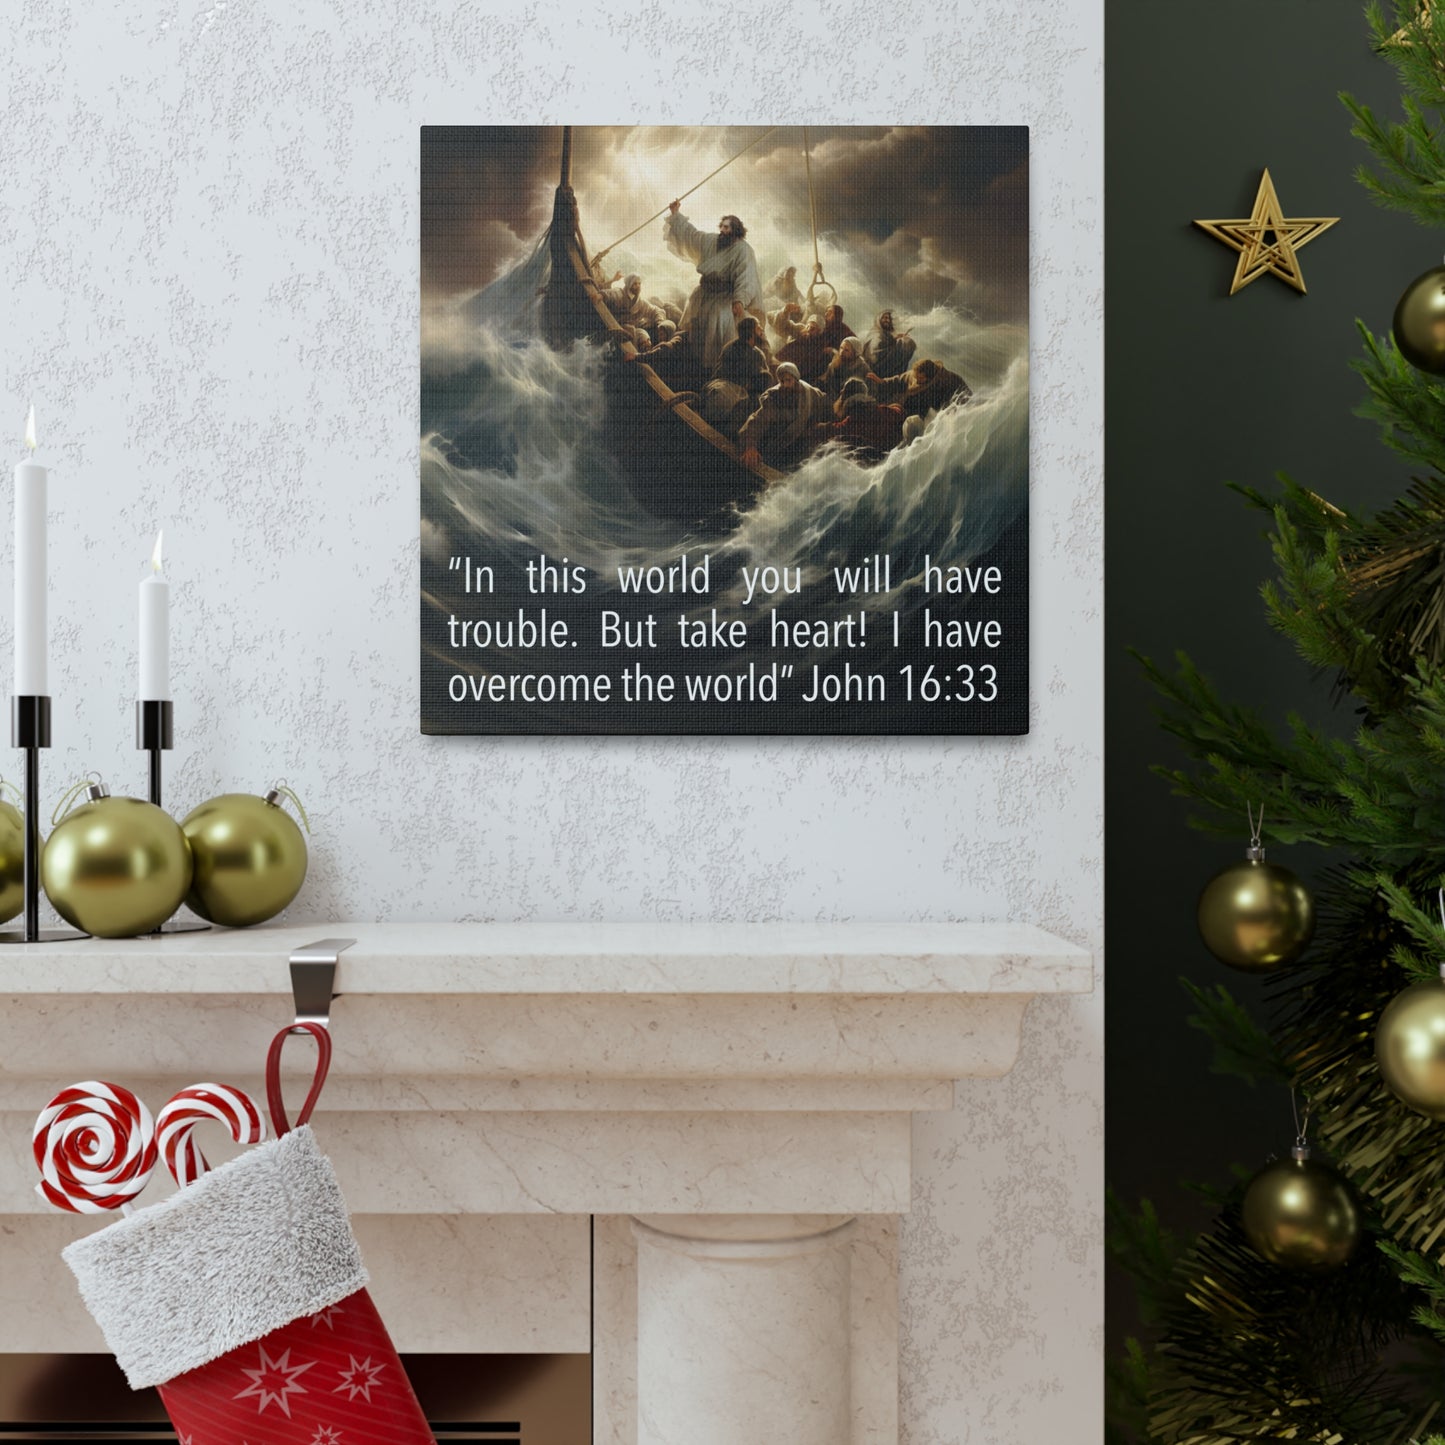 John 16:33 art decor gift